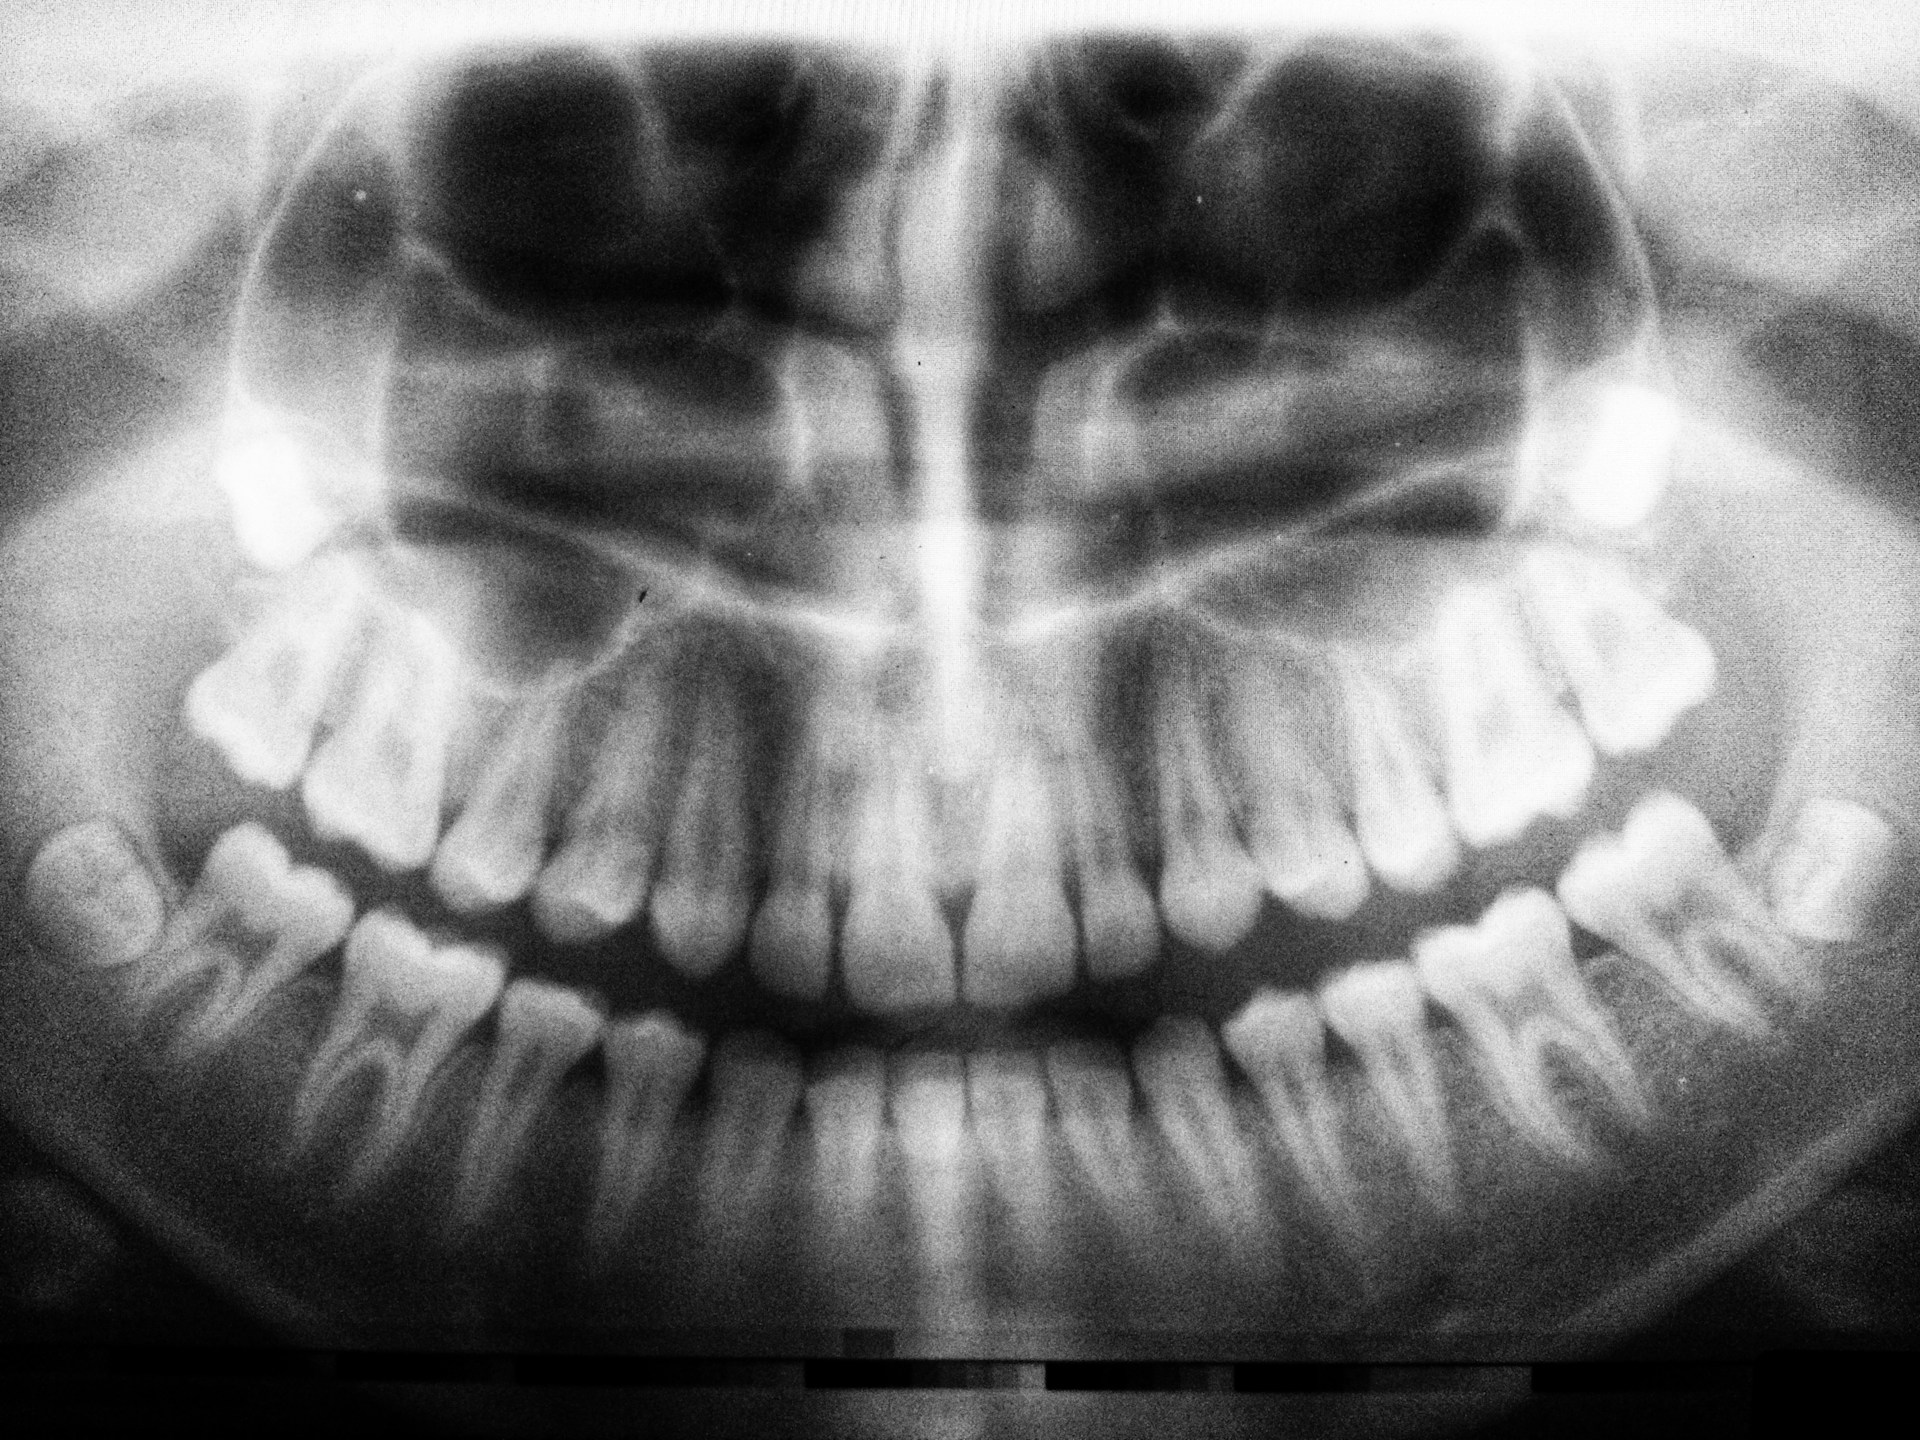 Wurzelresorption - Lohnt der Erhalt des Zahns?